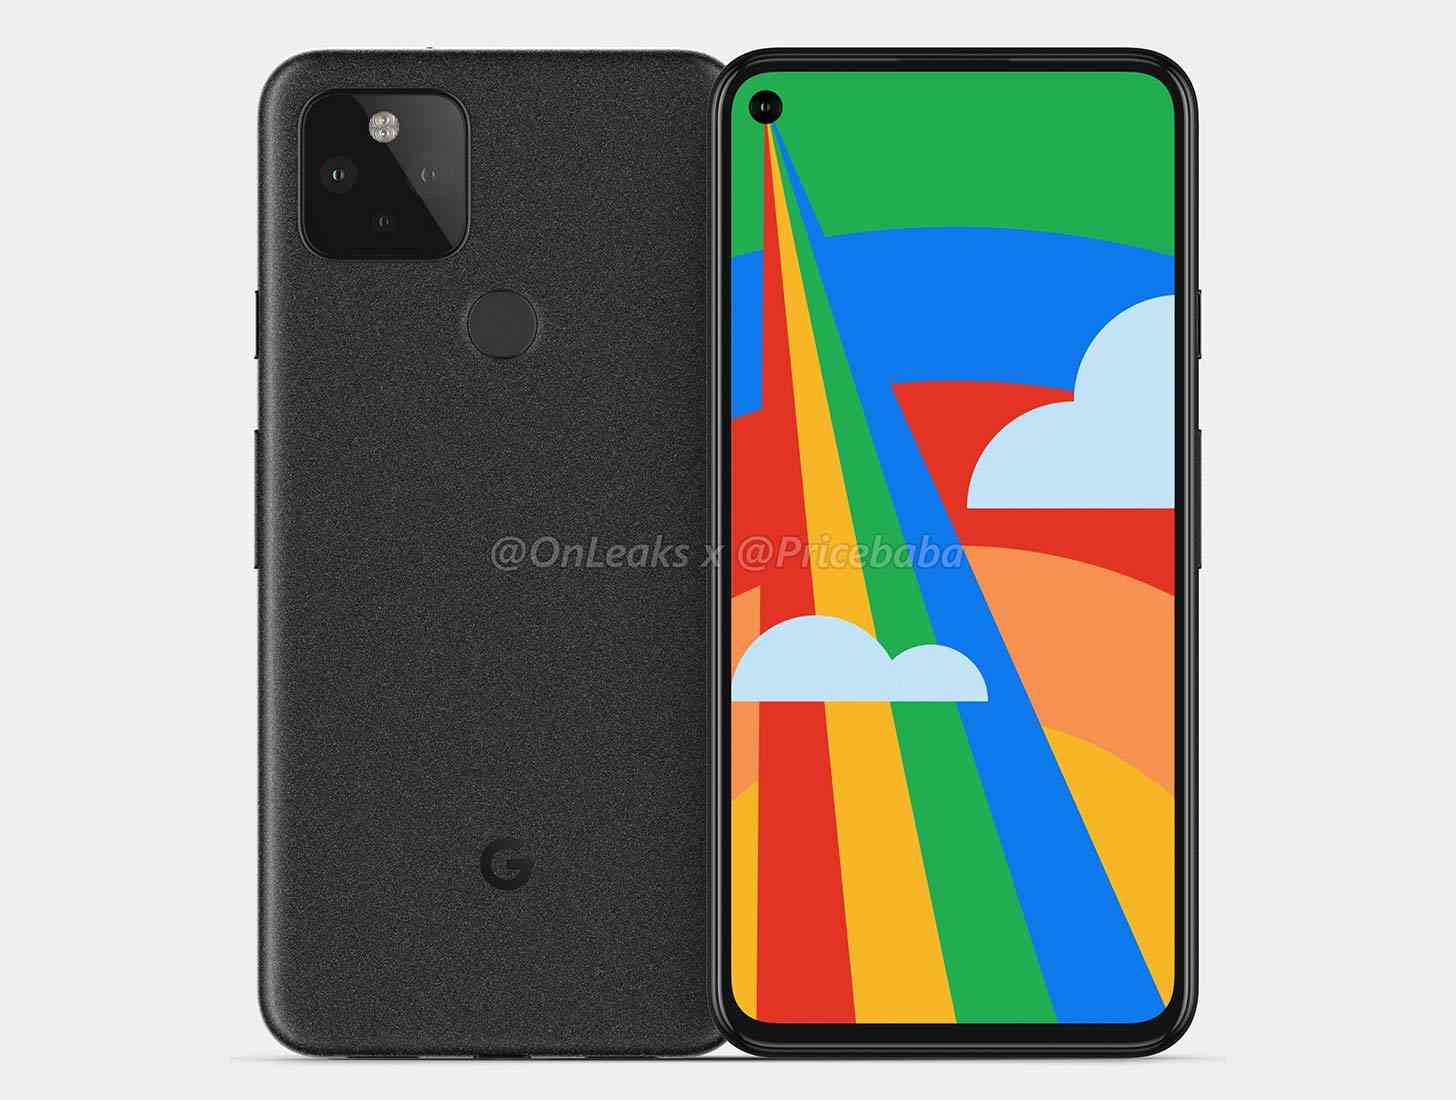 Google Pixel 5 design leak